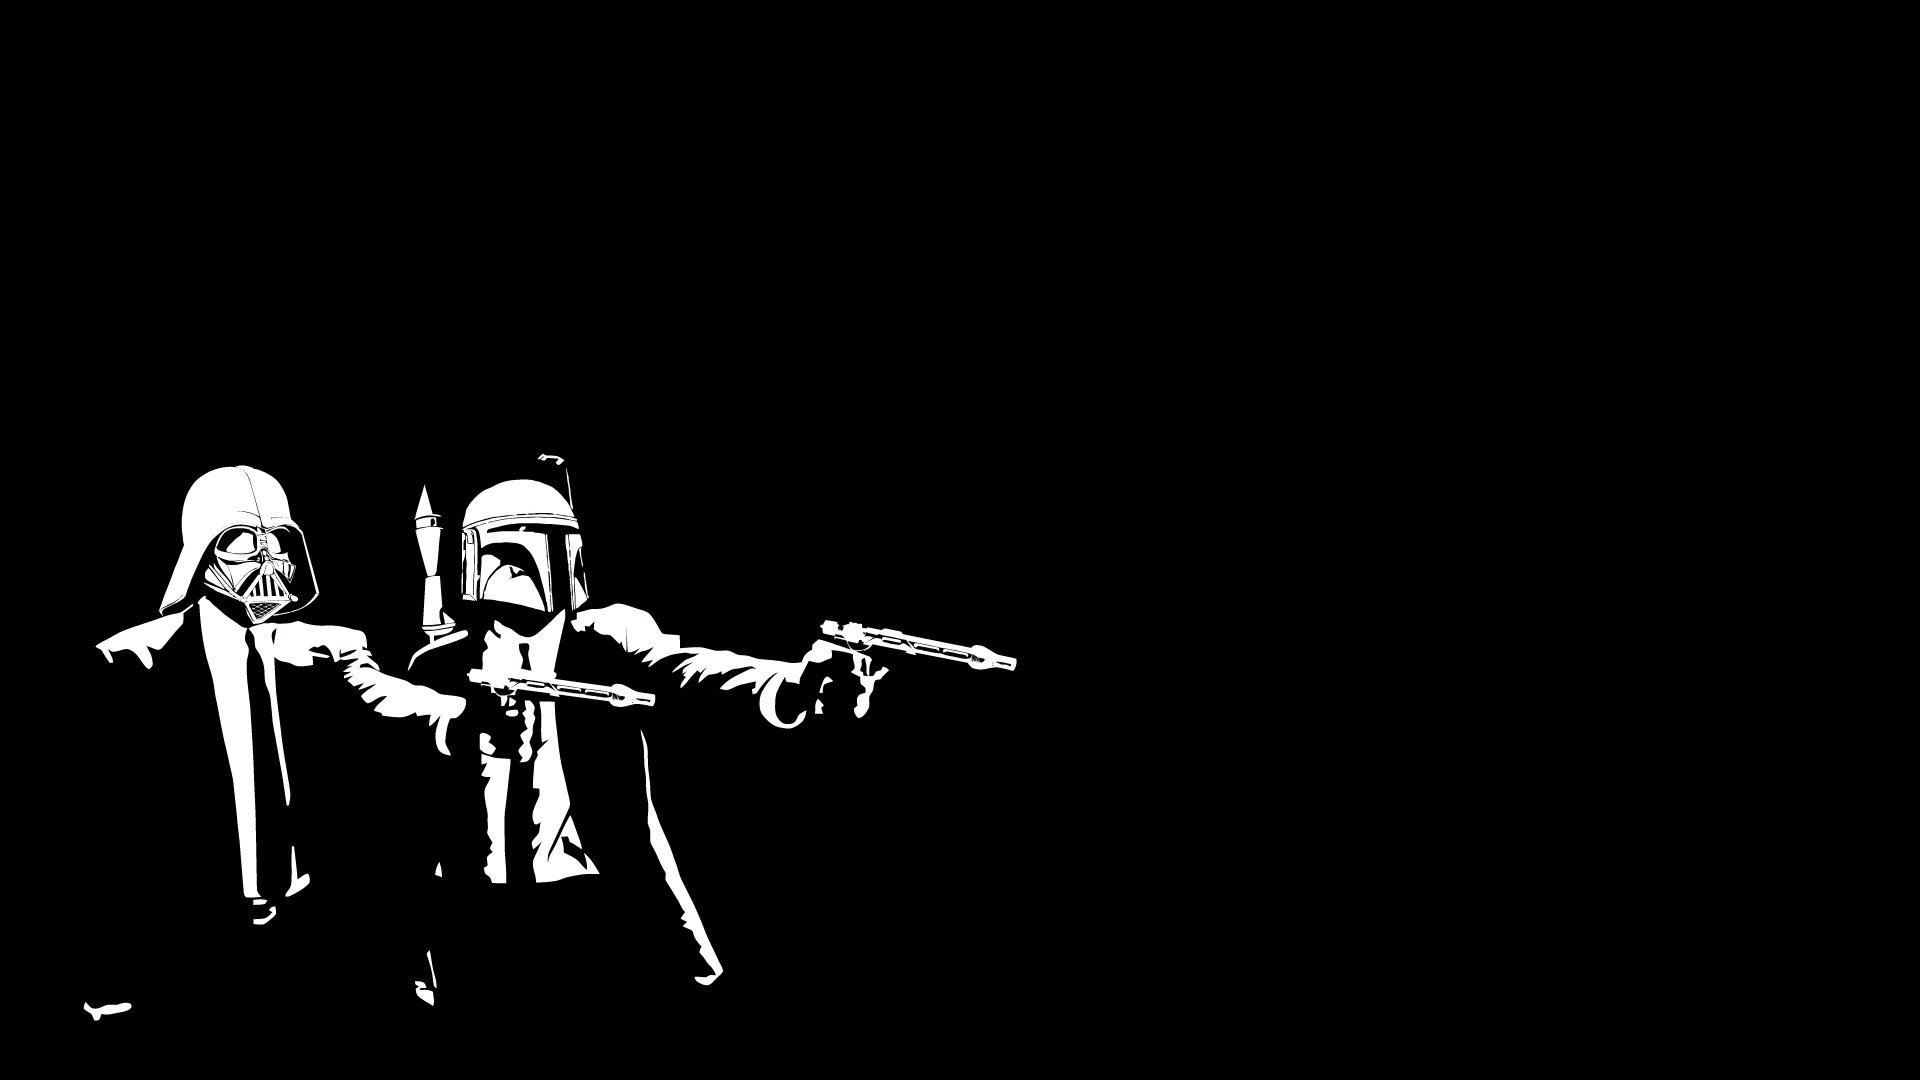 Wars Darth Vader Boba Fett The Boondock Saints wallpaper | .